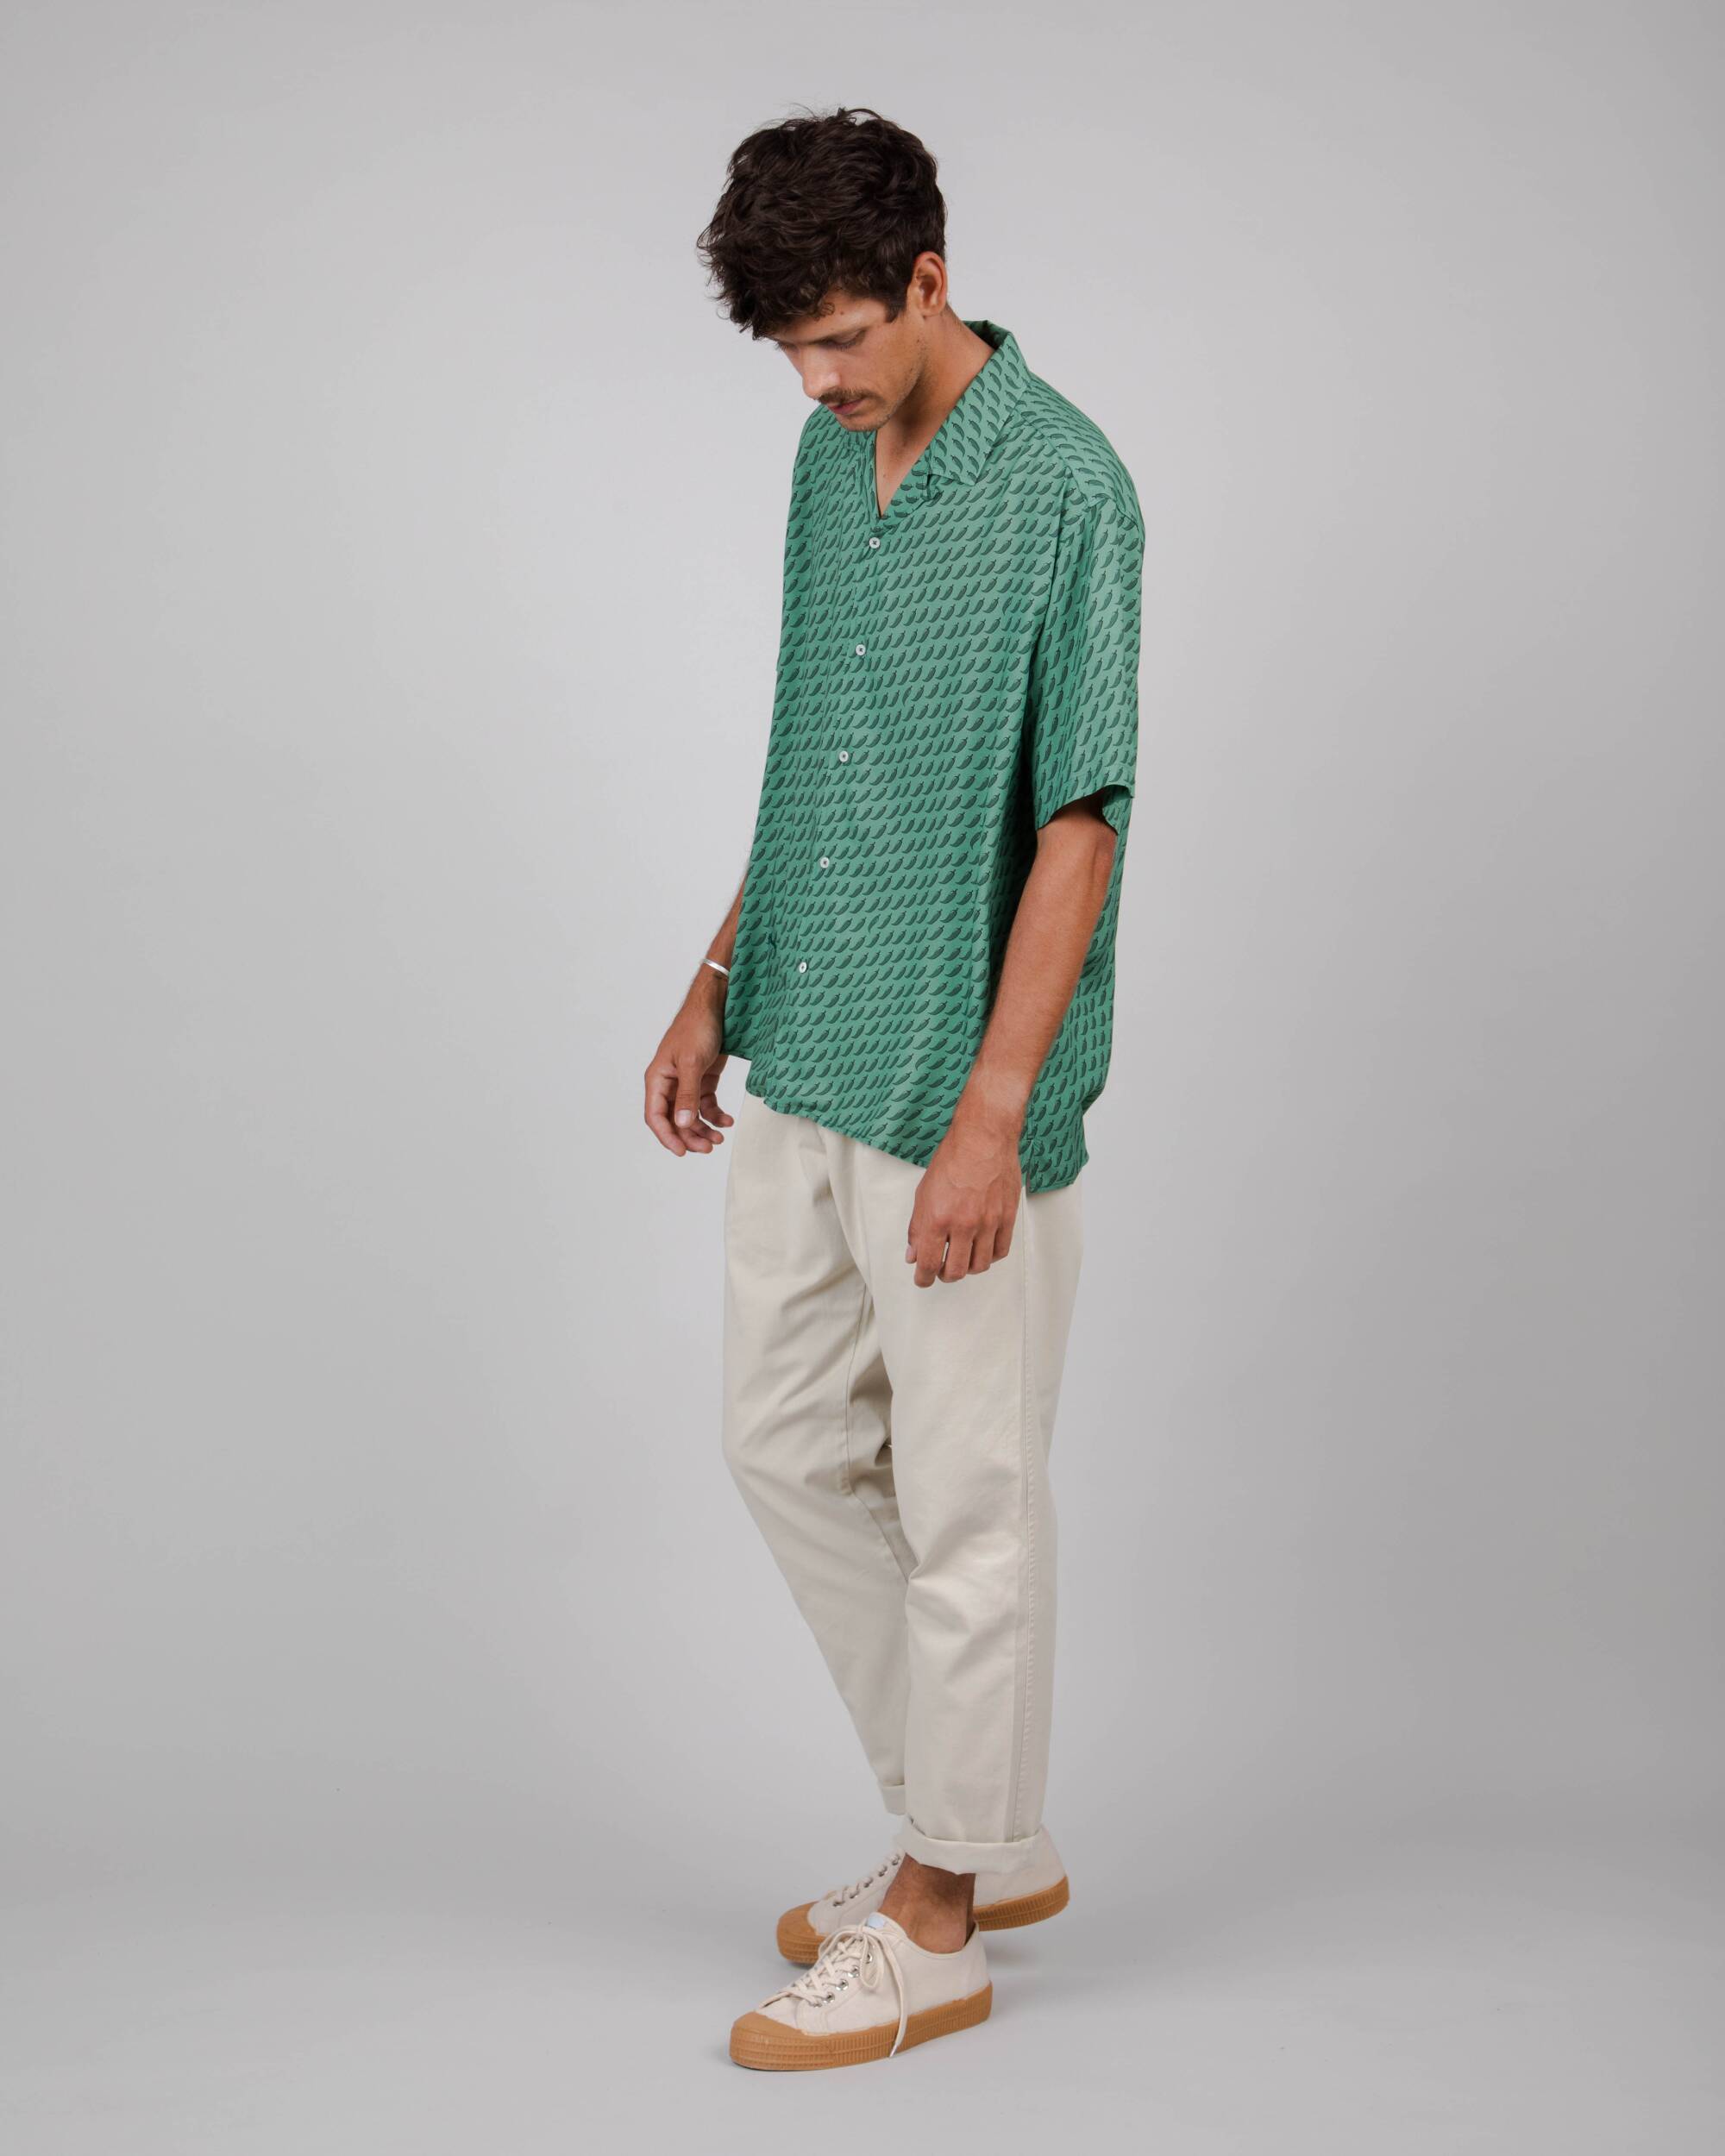 Green, short-sleeved Chilli Aloha shirt made from 100% viscose from Brava Fabrics